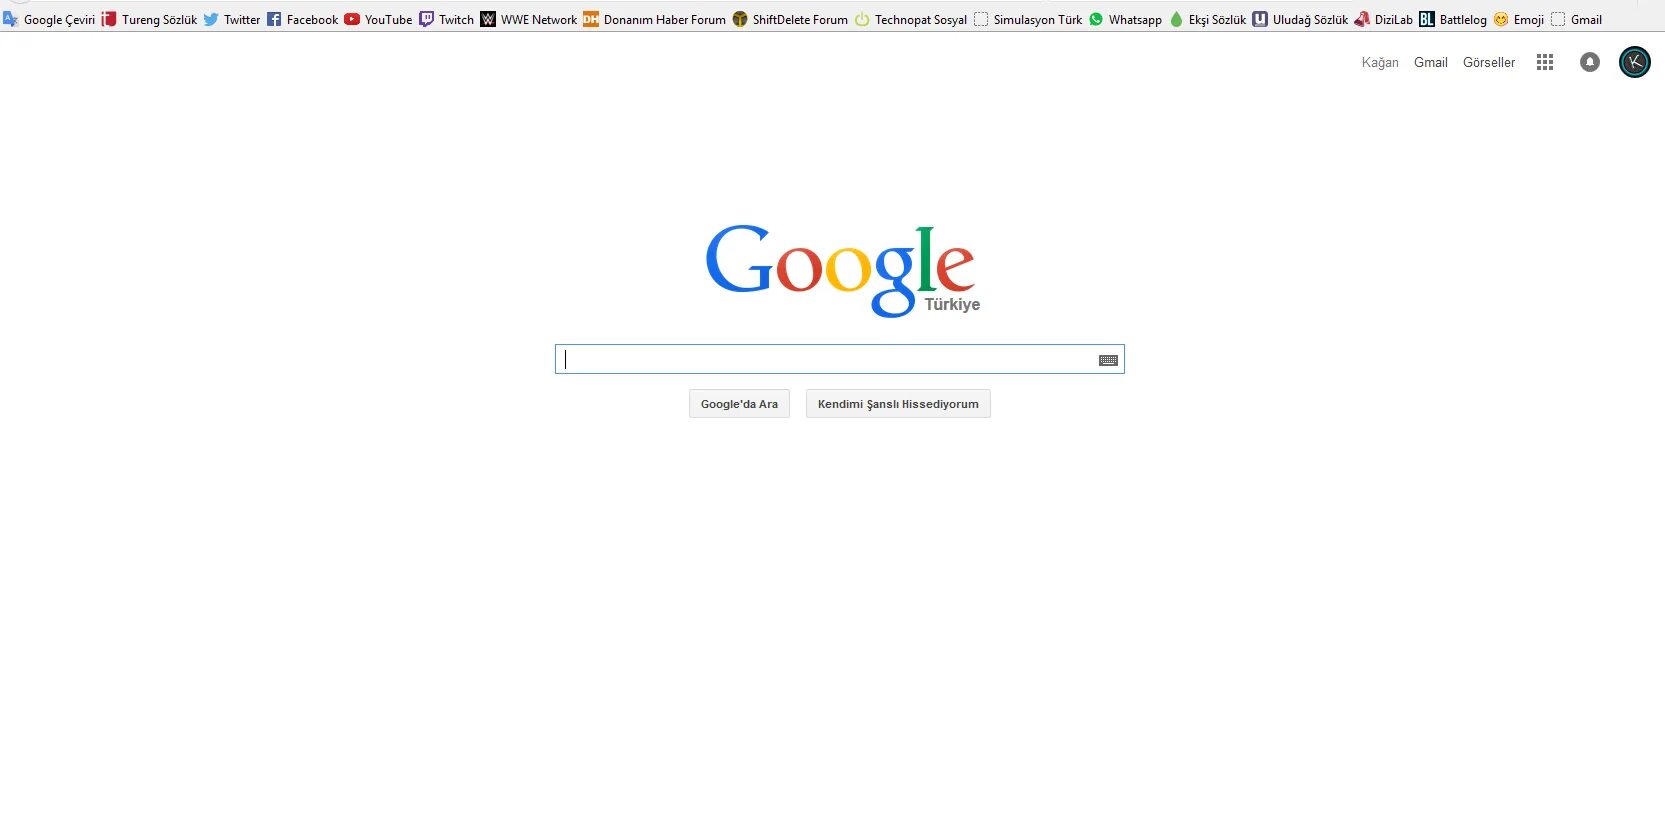 Google без https. Гугл. Страница гугл. Гугл фото. Гугл логотип 2021.